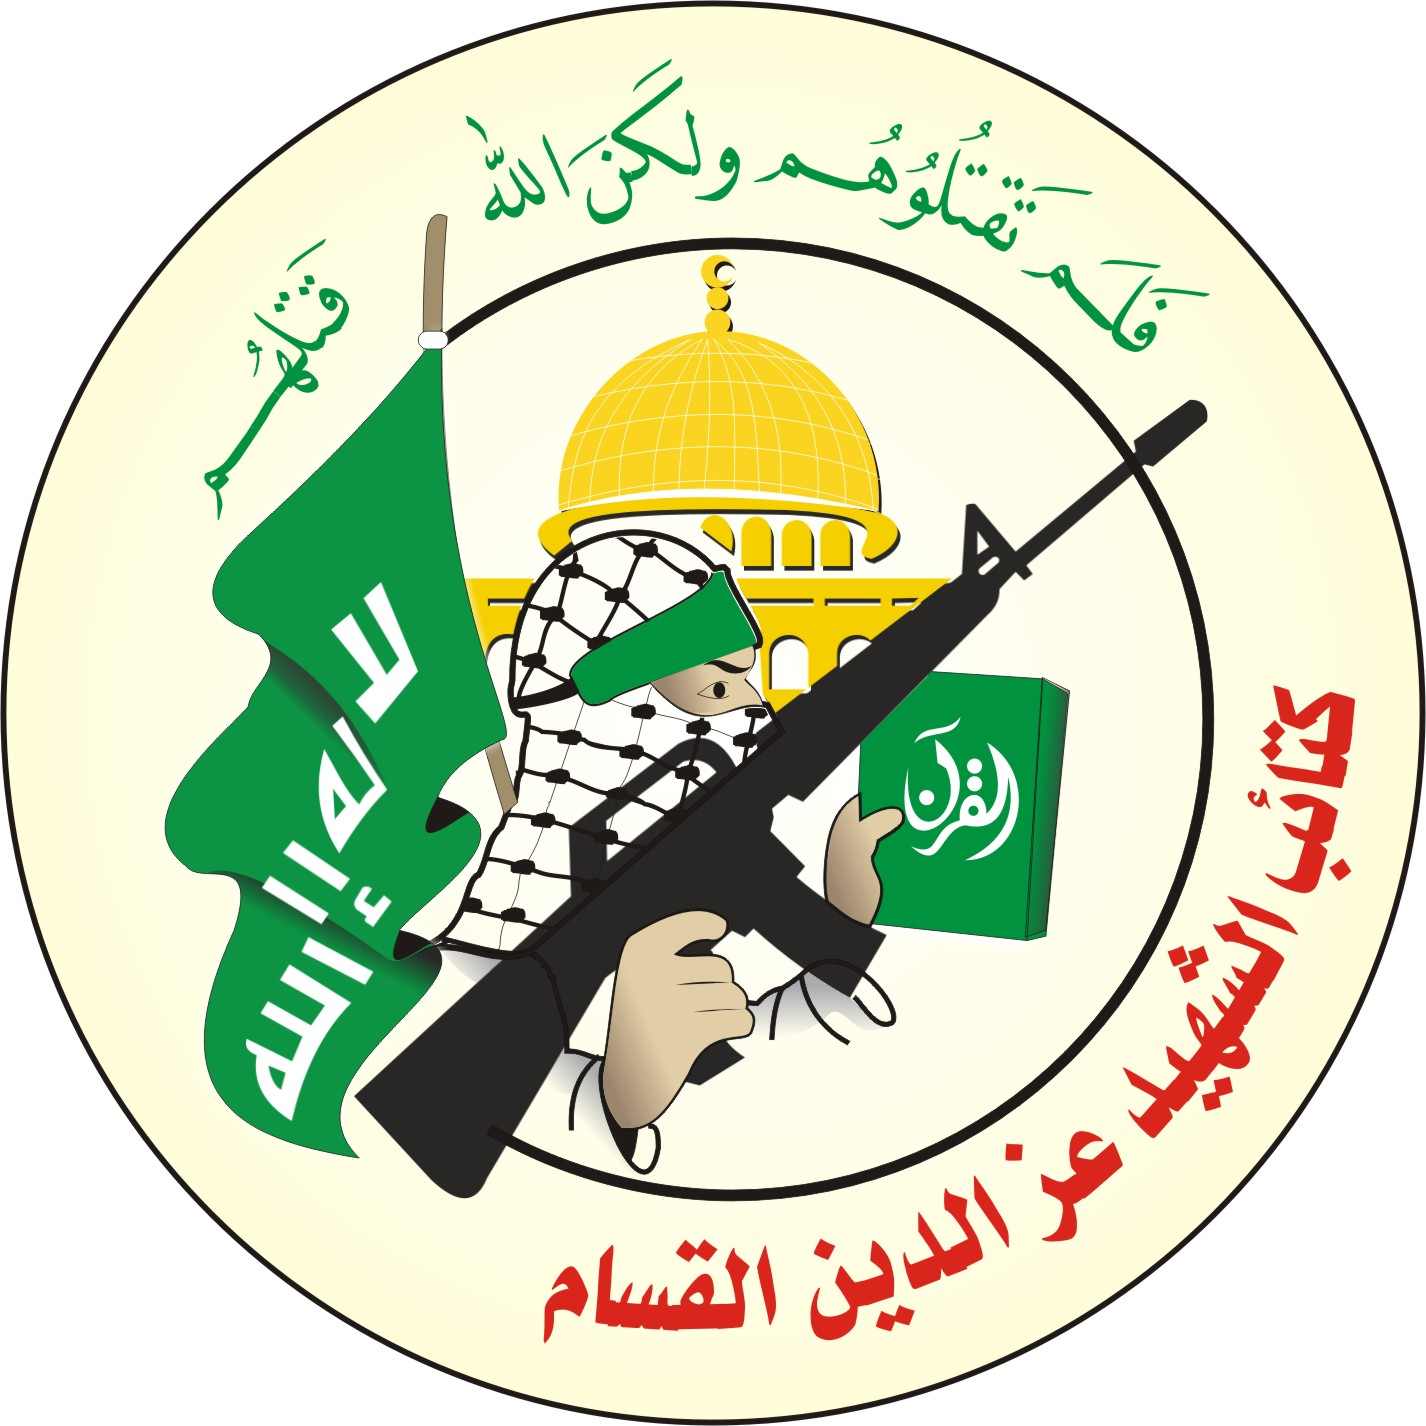 حماس: #كتائب_القسام عثرت على اجهزة اسرائيلية لكشف #الانفاق على حدود غزة